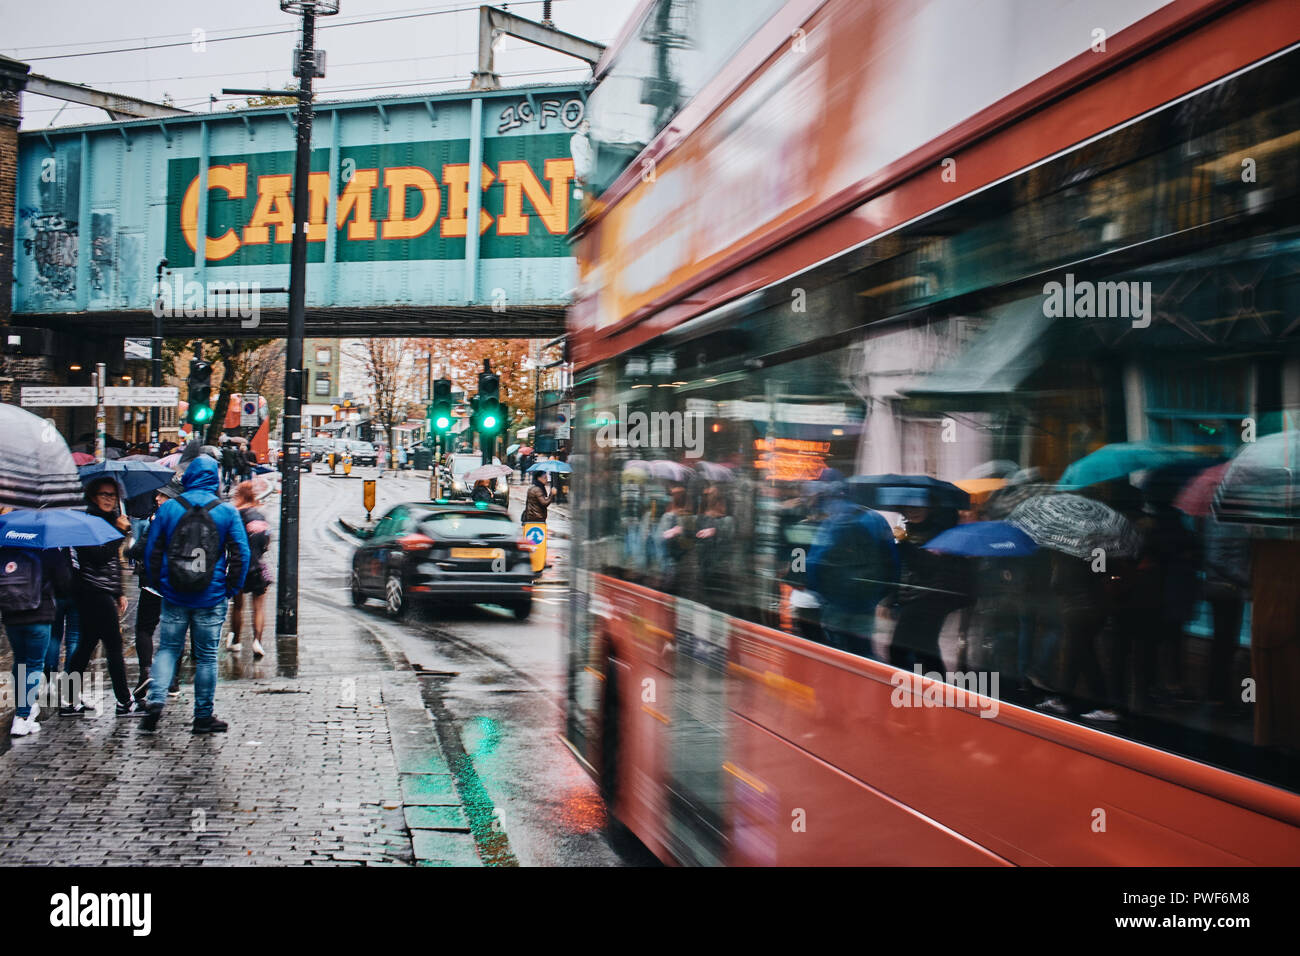 London Doppeldeckerbus zum Camden Market wie in Camden Town, London UK gesehen. Foto: Gergo Toth/Alamy leben Nachrichten Stockfoto